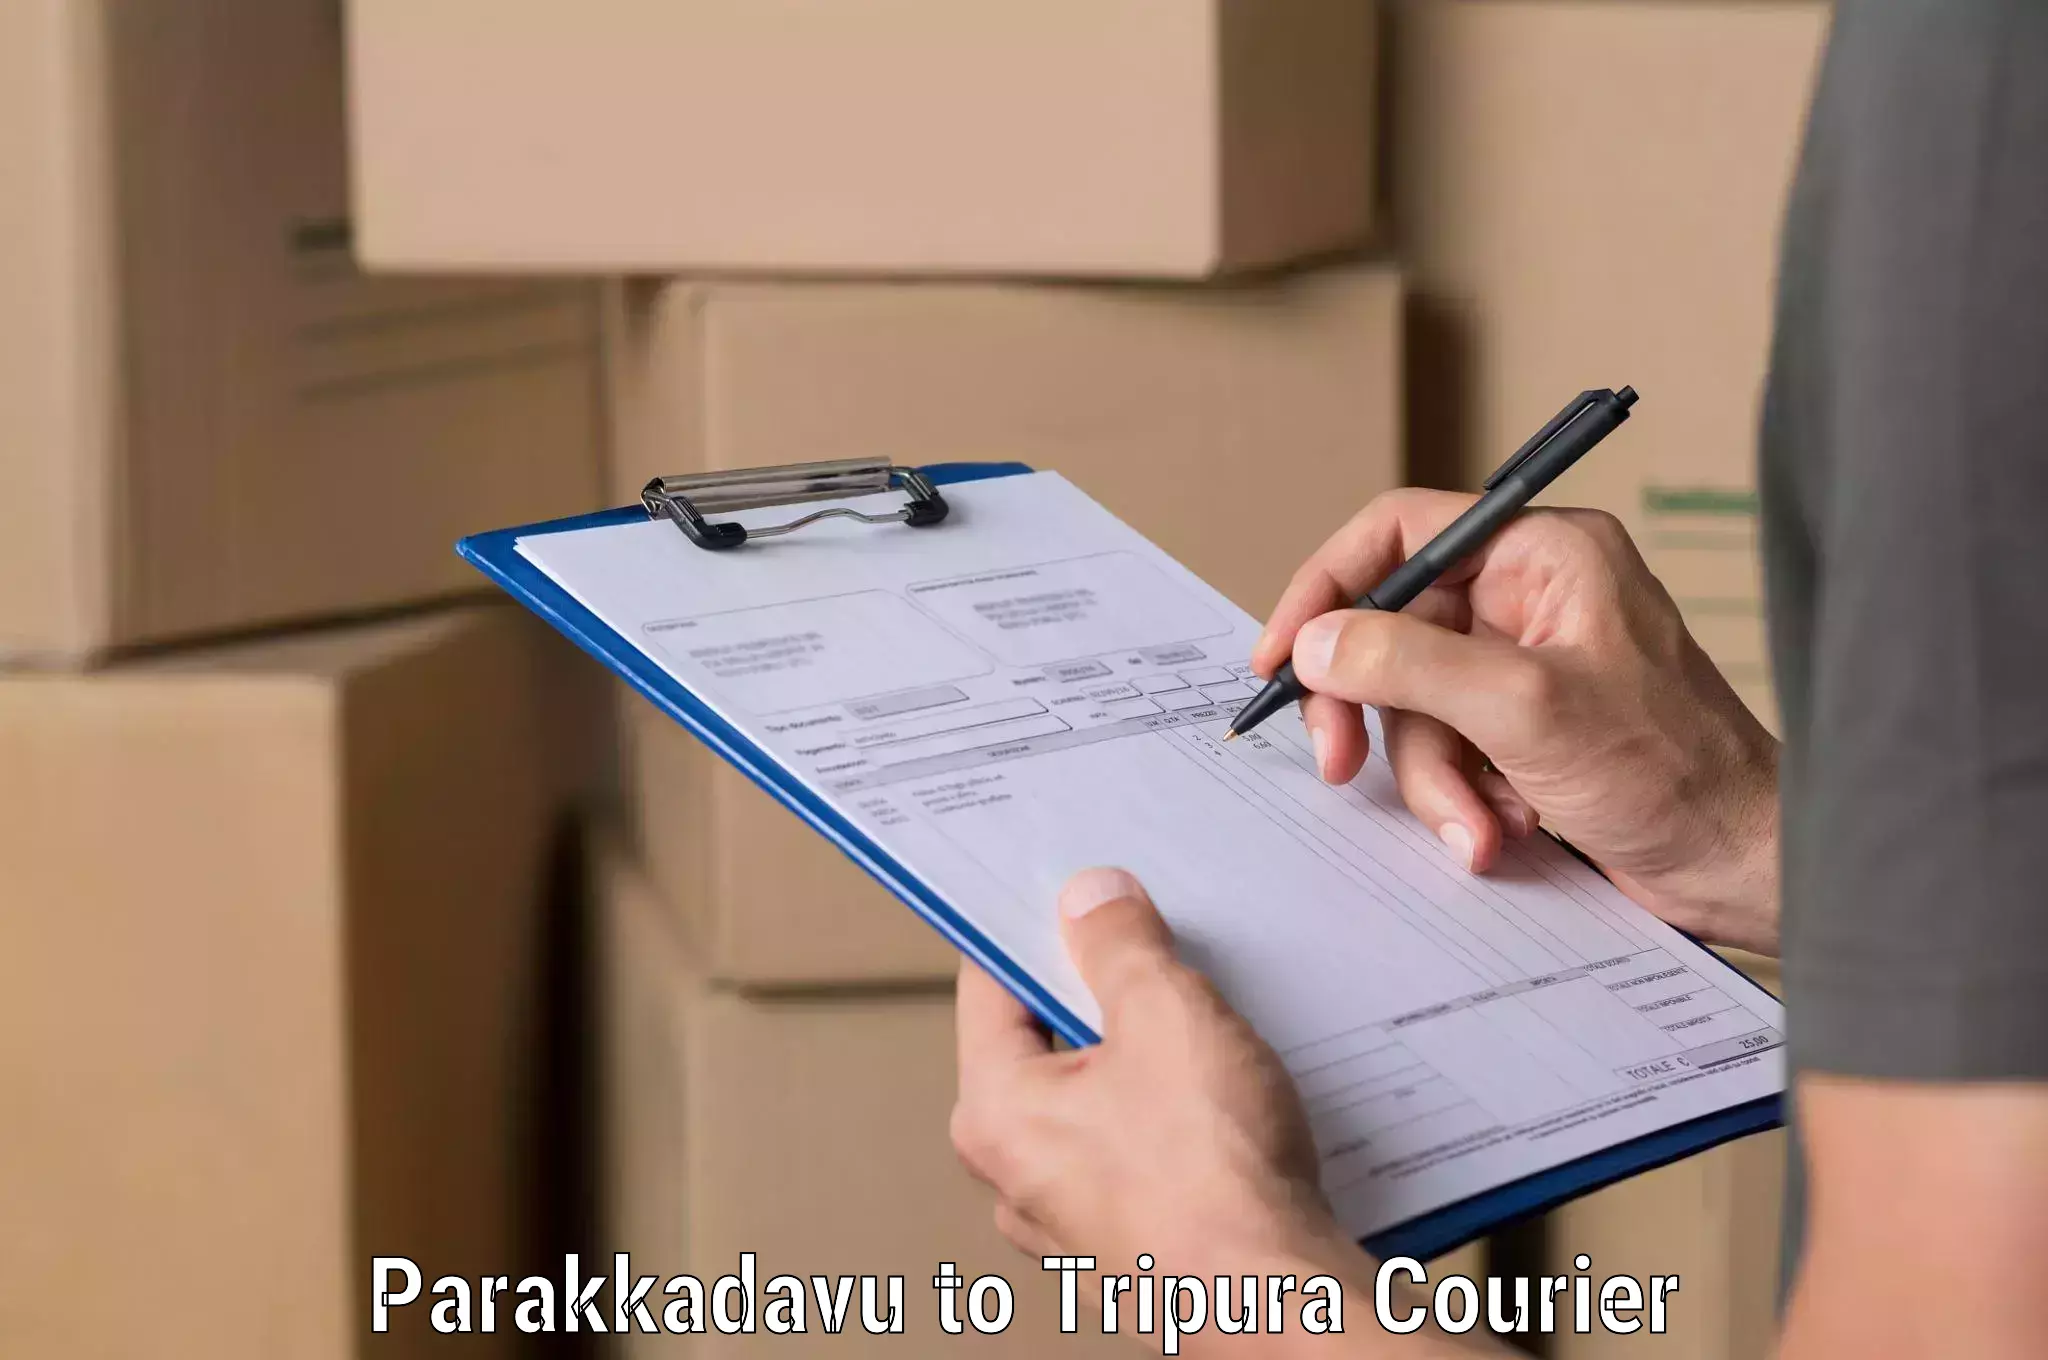 Optimized delivery routes in Parakkadavu to Teliamura